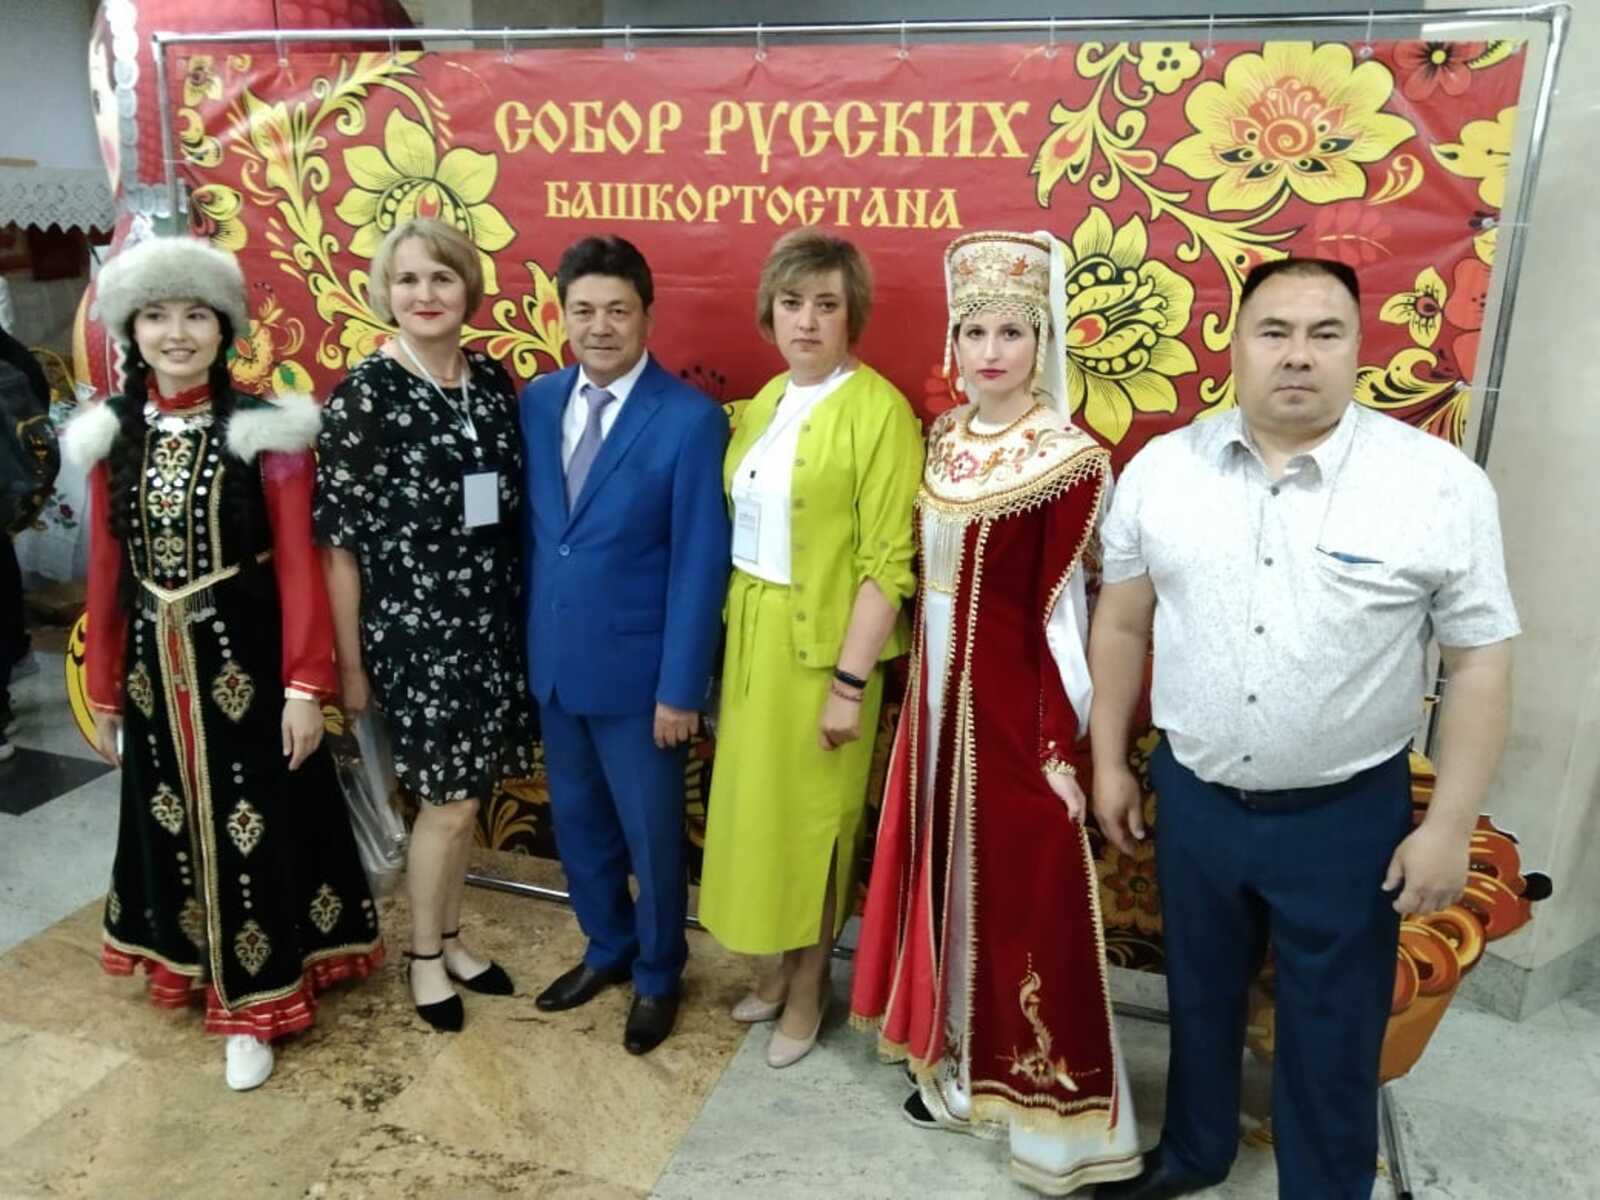 Дуванцы стали участниками расширенной конференции Собора русских Башкортостана